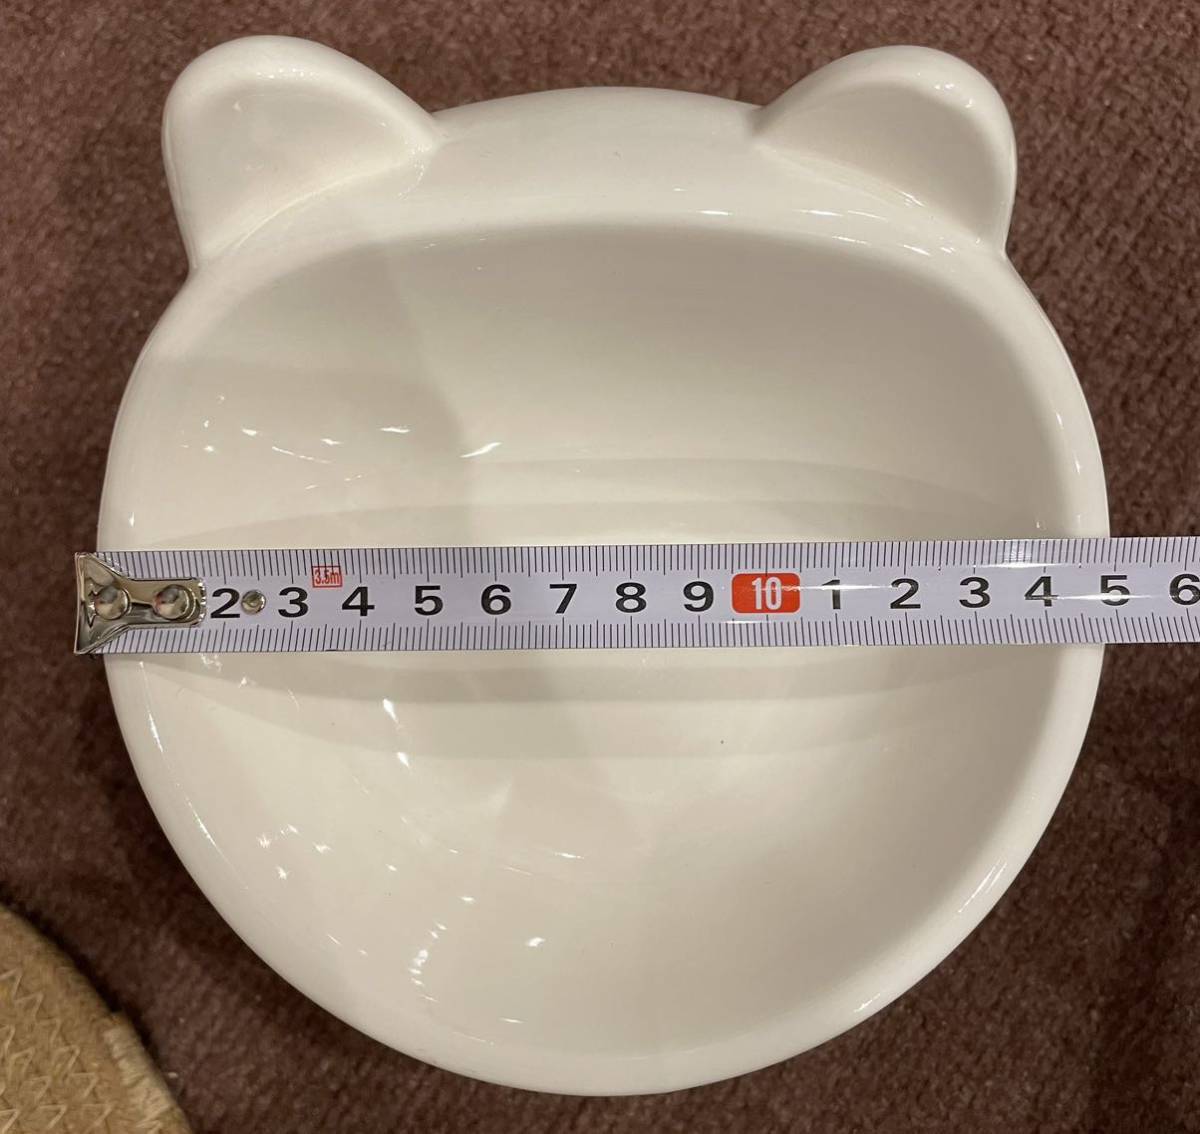  новый товар не использовался бесплатная доставка GUREITOJP керамика капот миска кошка посуда керамика симпатичный наклонение домашнее животное посуда 